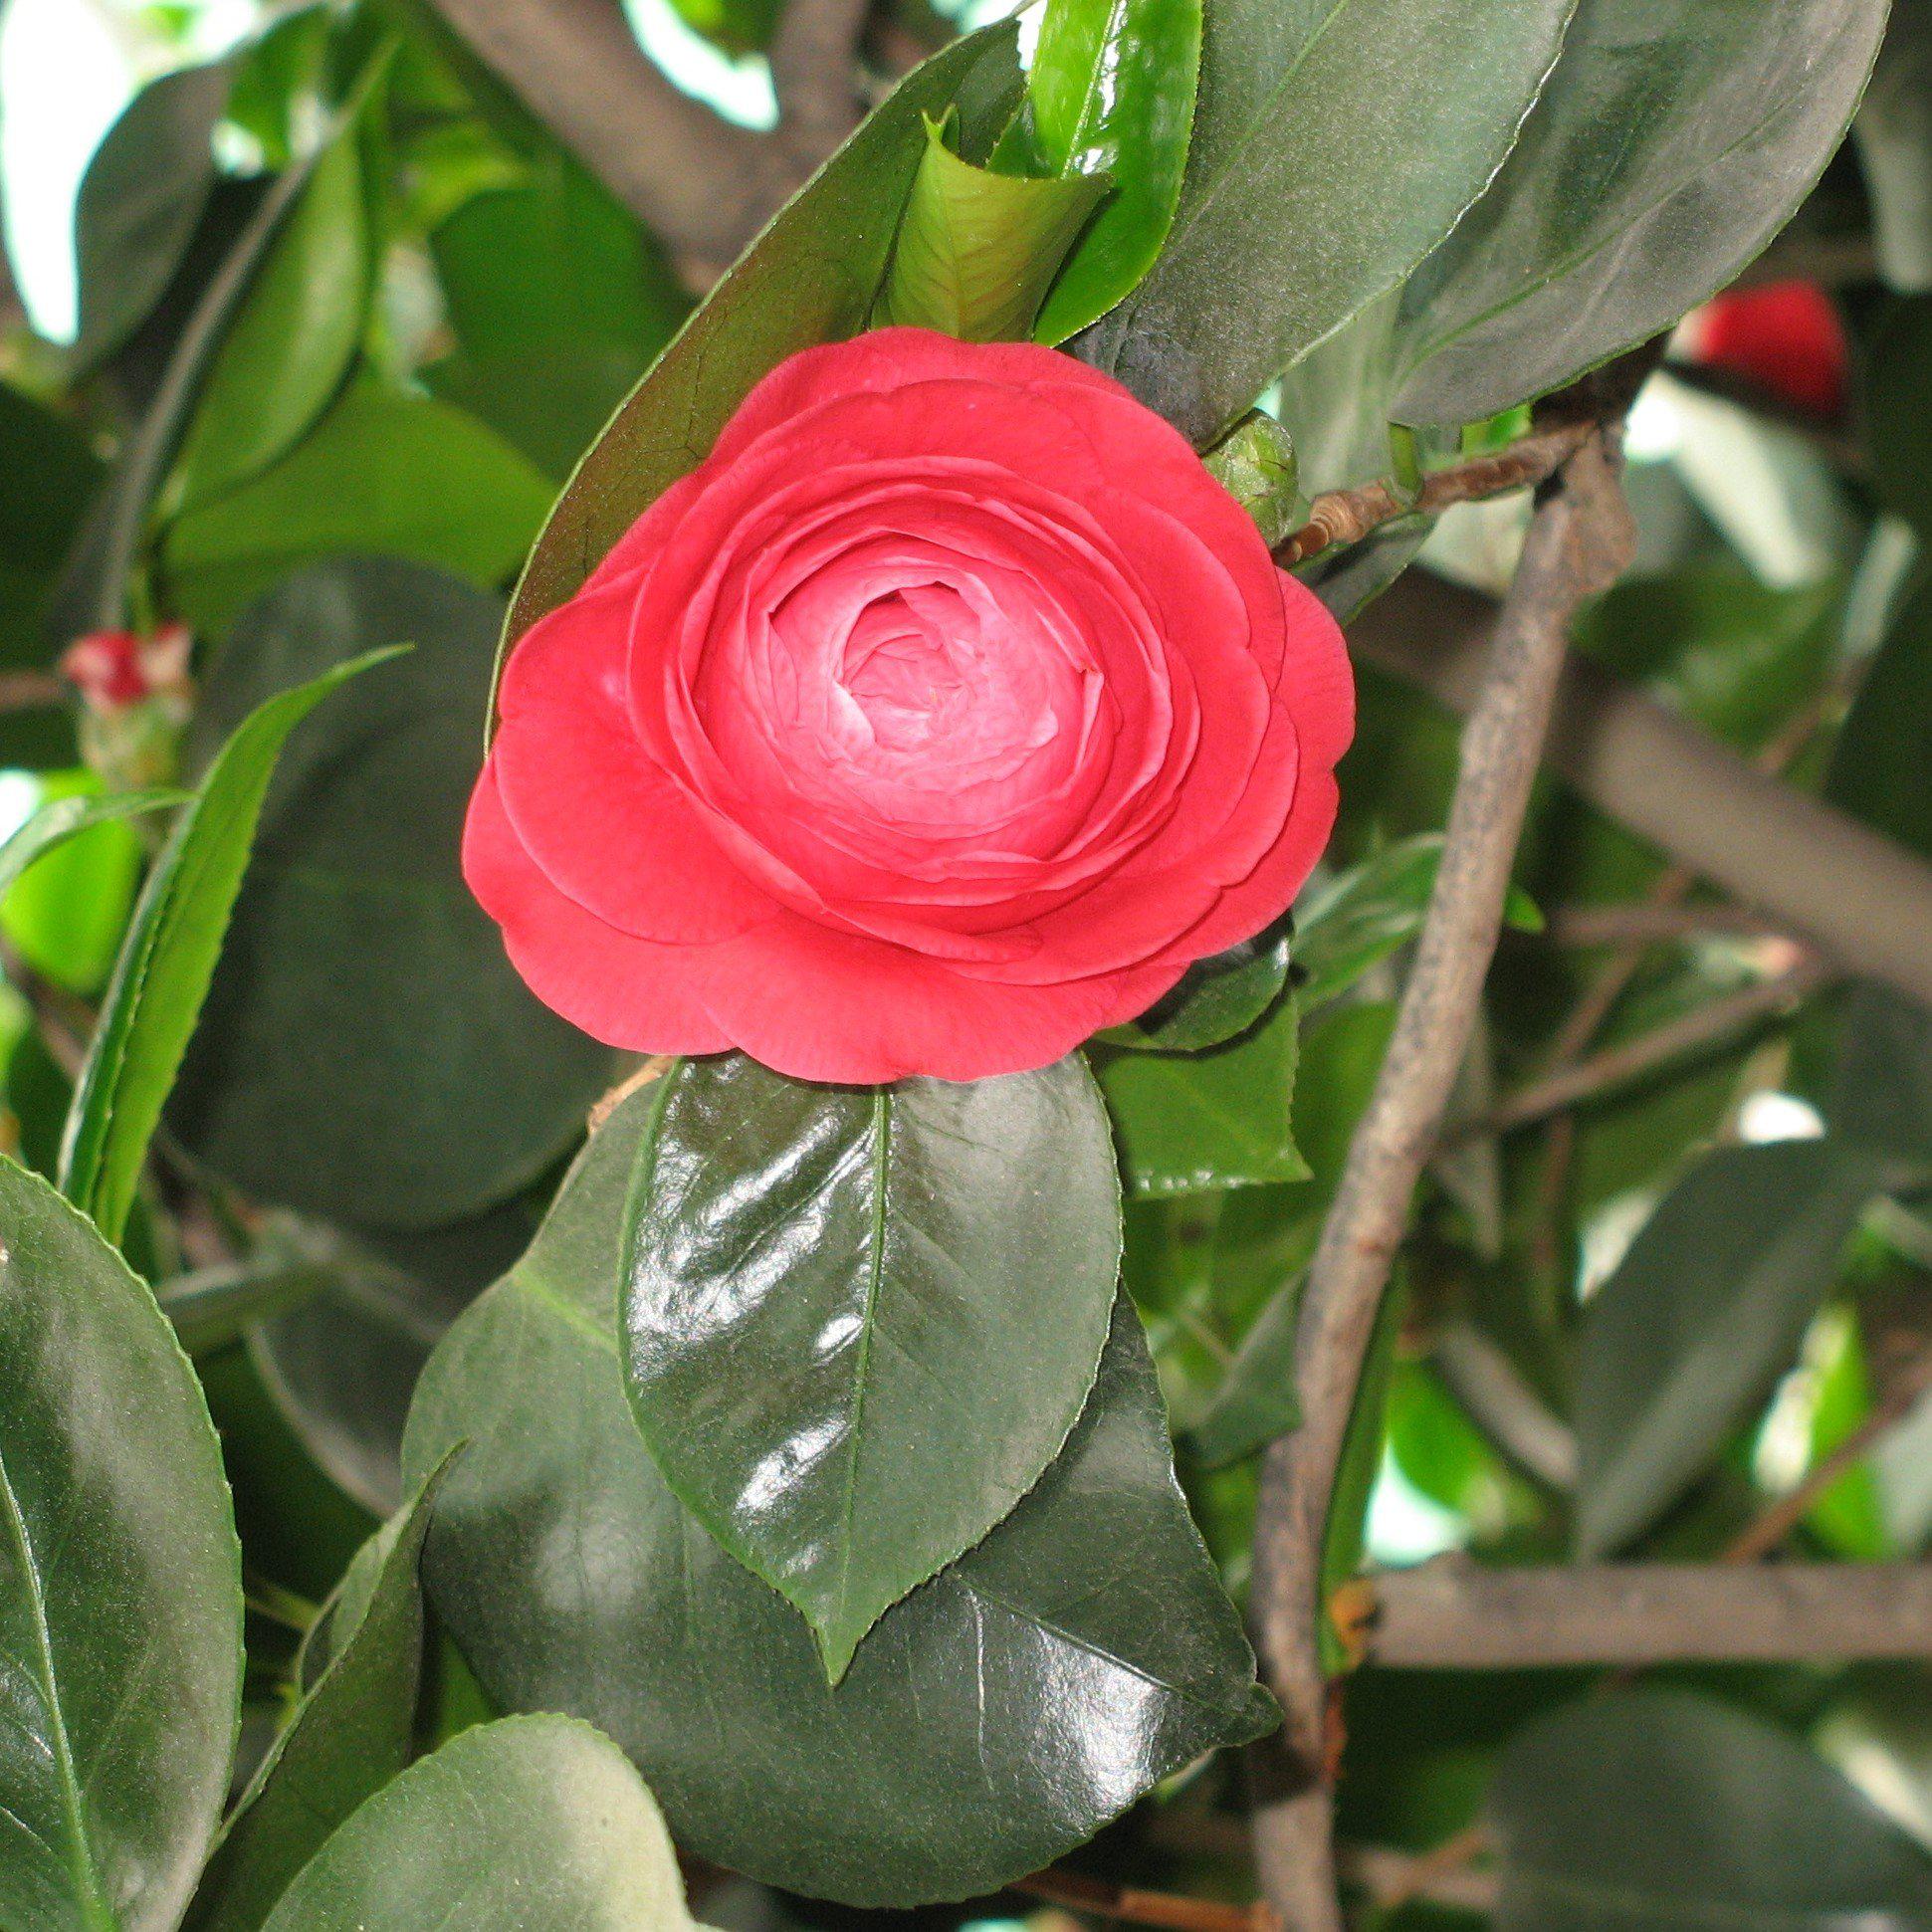 Camellia japonica 'Mathotiana' ~ Mathotiana Camellia